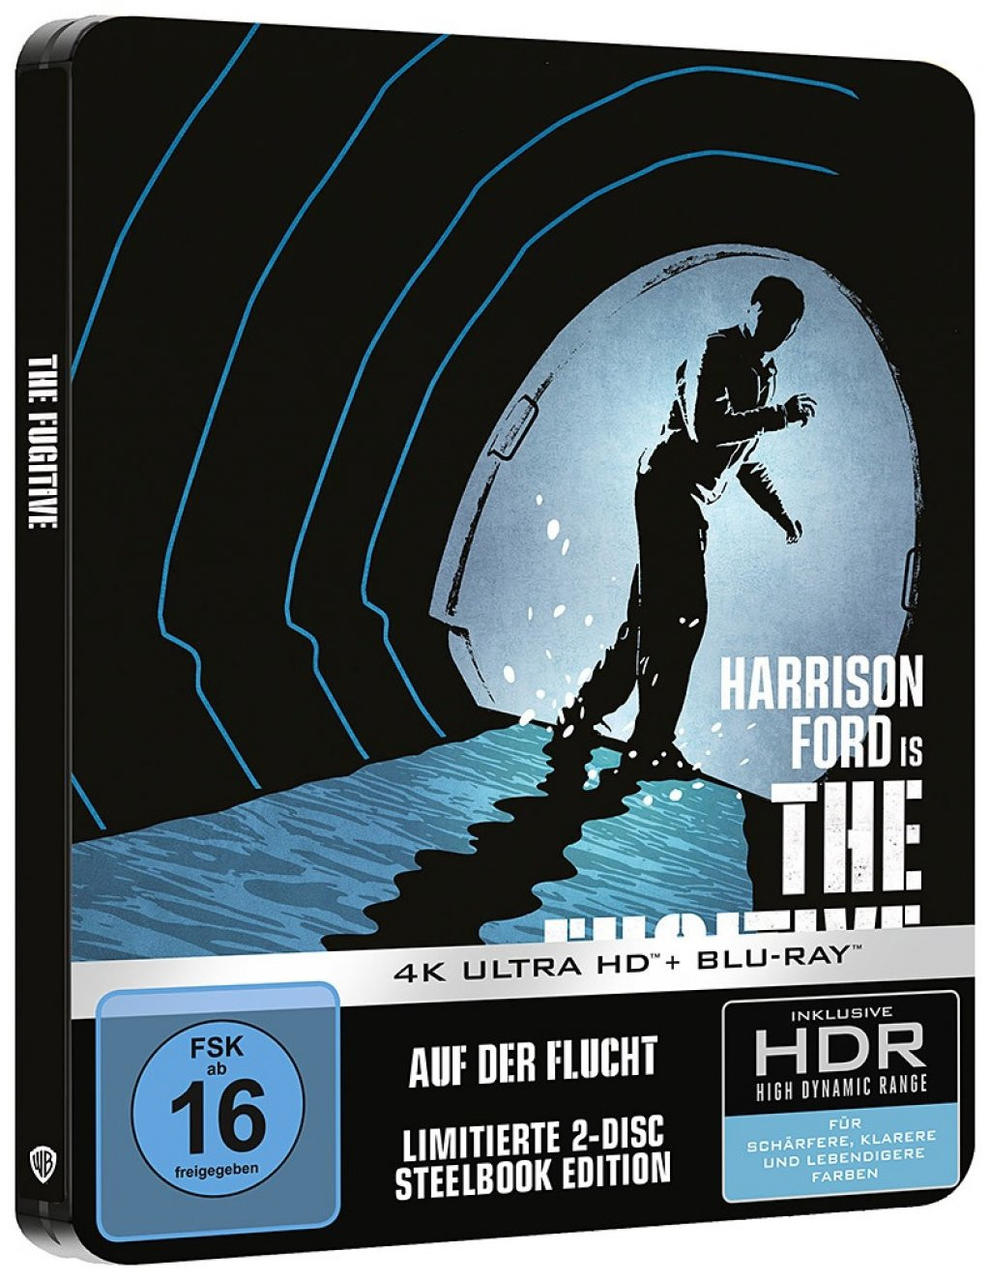 Blu-ray Ultra 4K der Auf Flucht HD